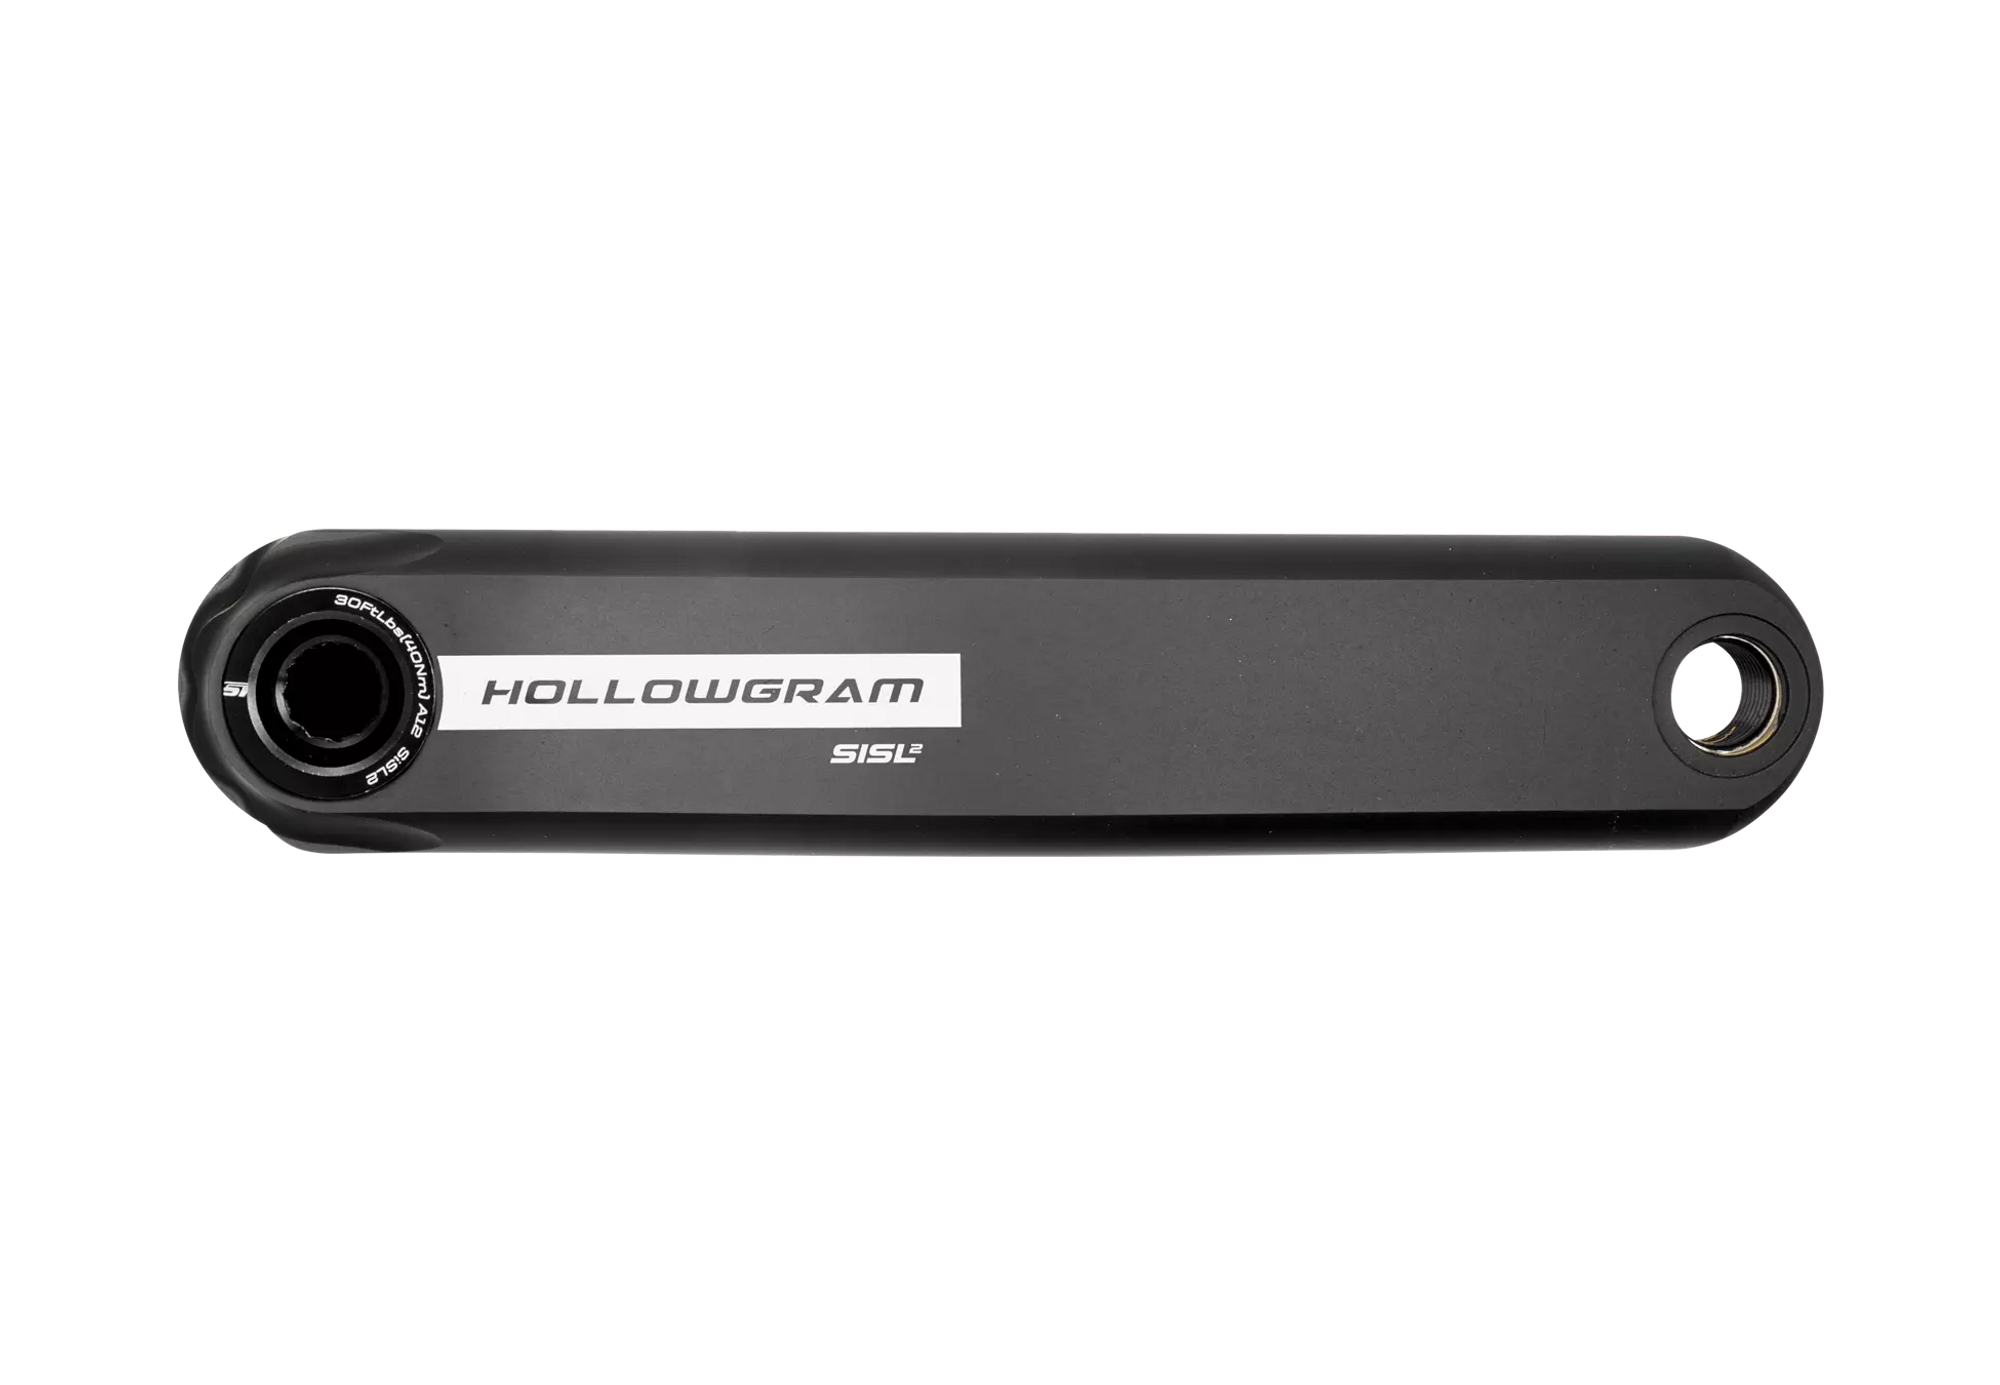 Cannondale Hollowgram SiSL2 Crankbolt Kit KP251/BLK 